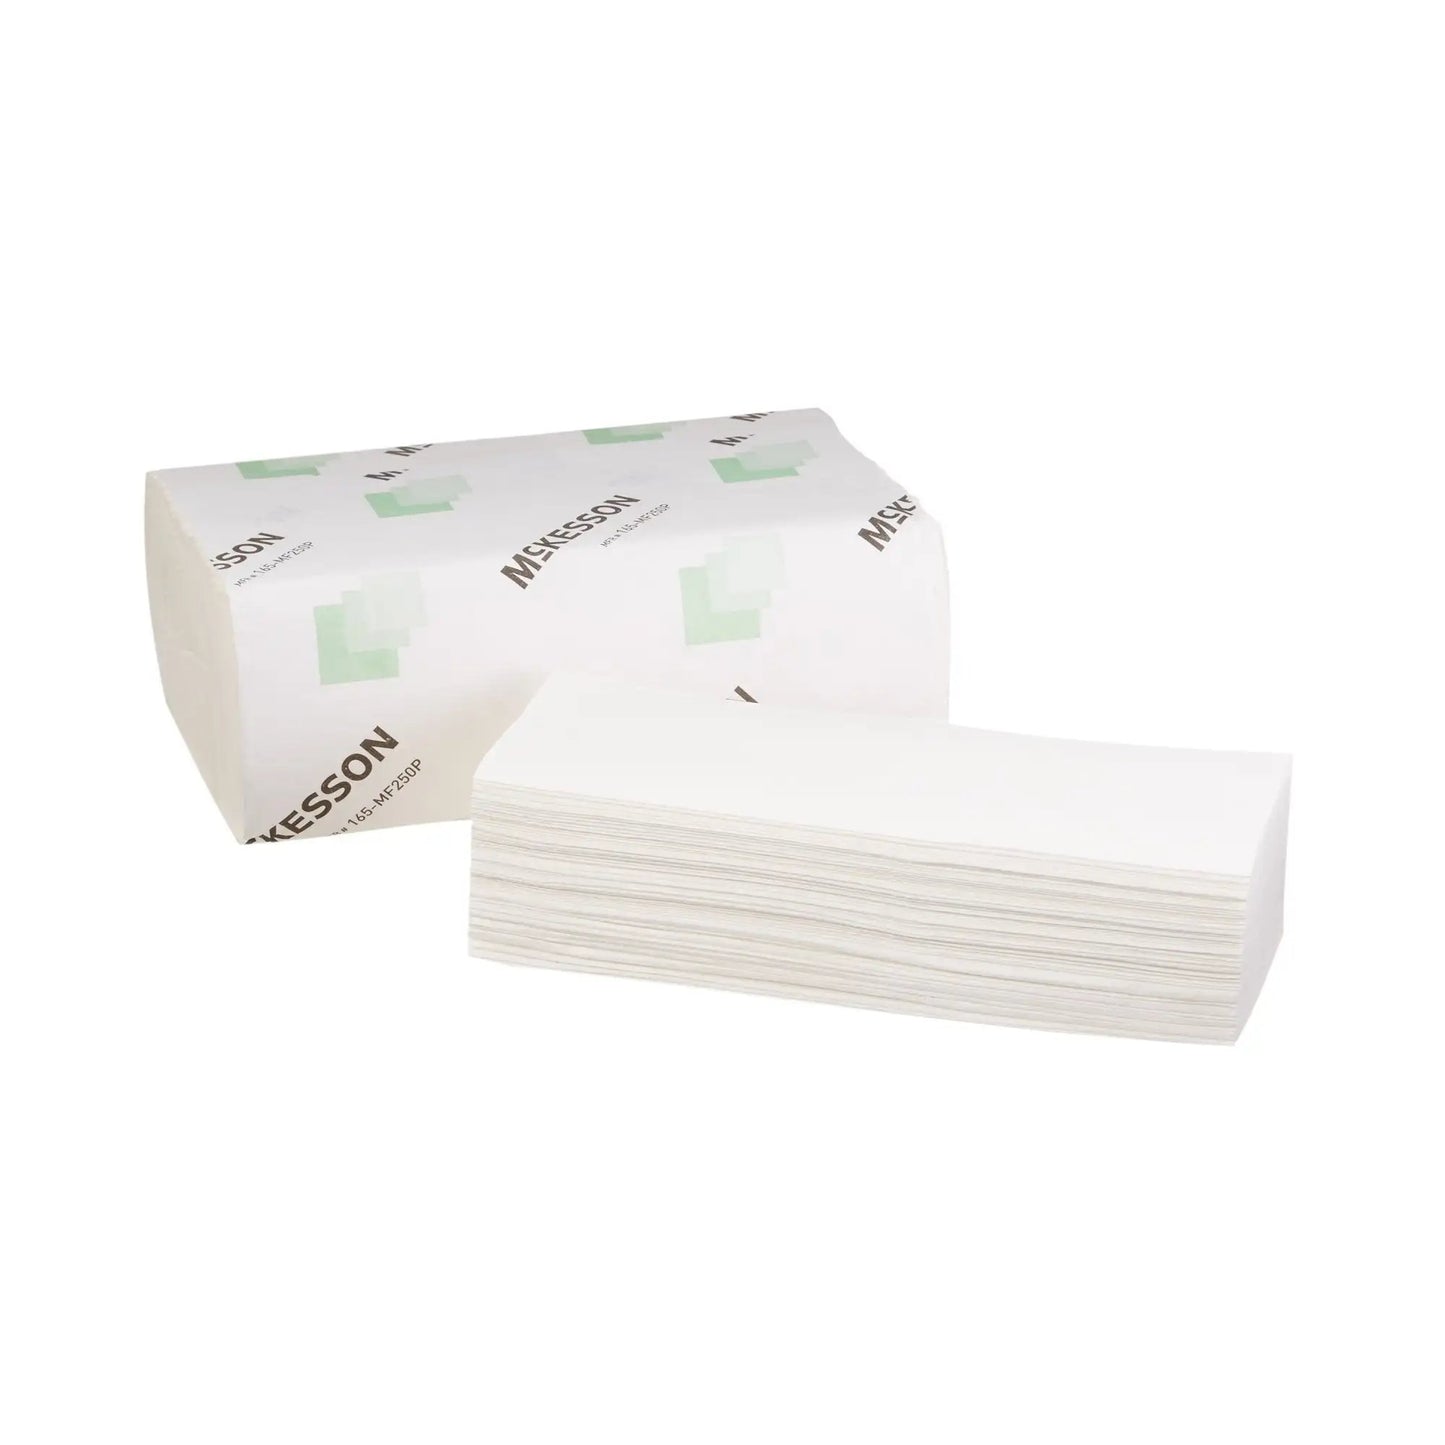 McKesson Premium Paper Towel, 250 per Pack